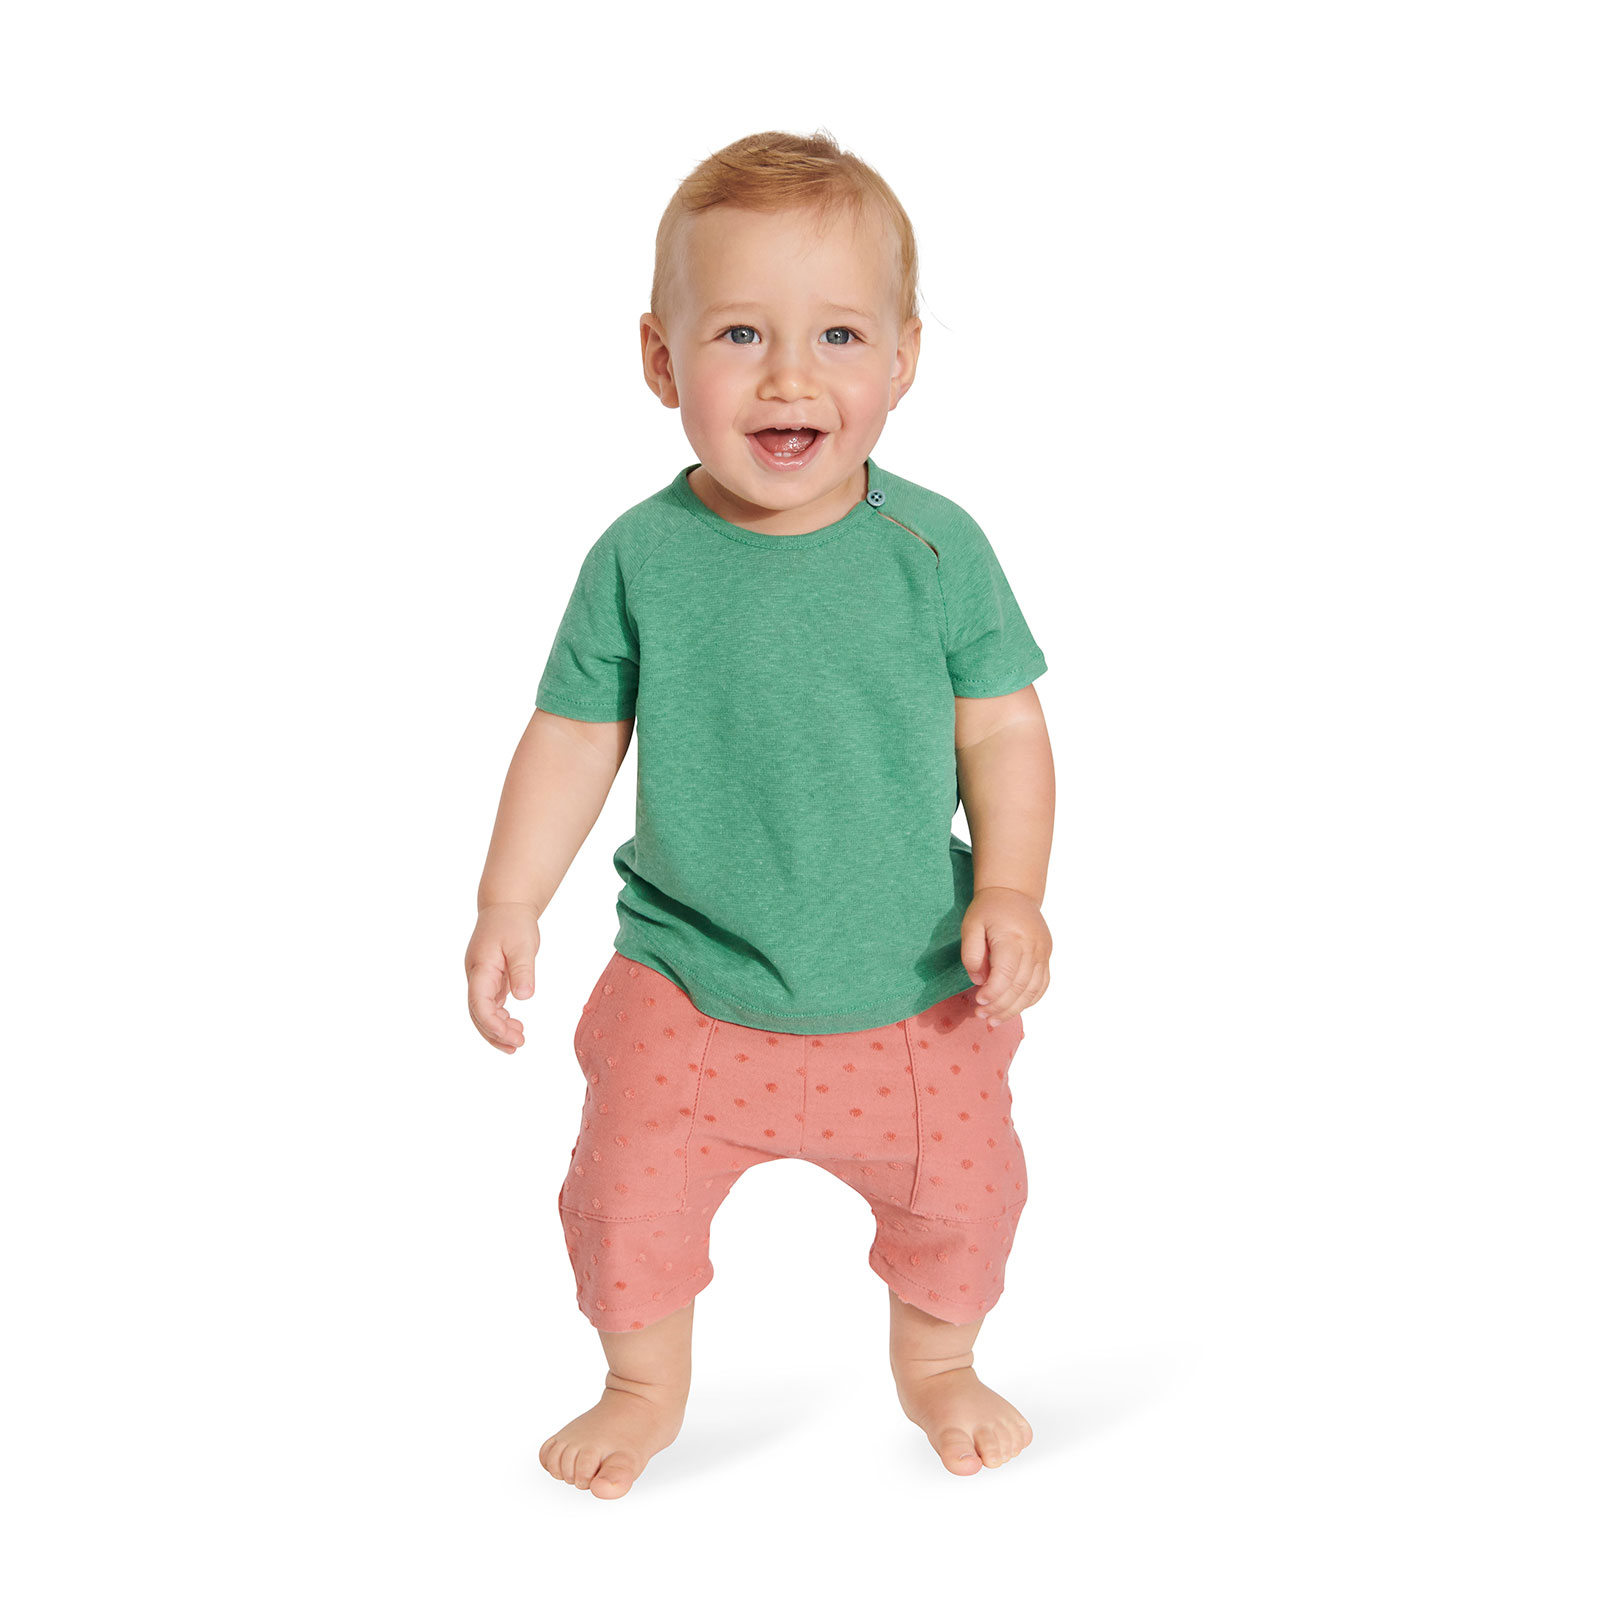 Burda Groen 9246 - Baby Shirt en Broek